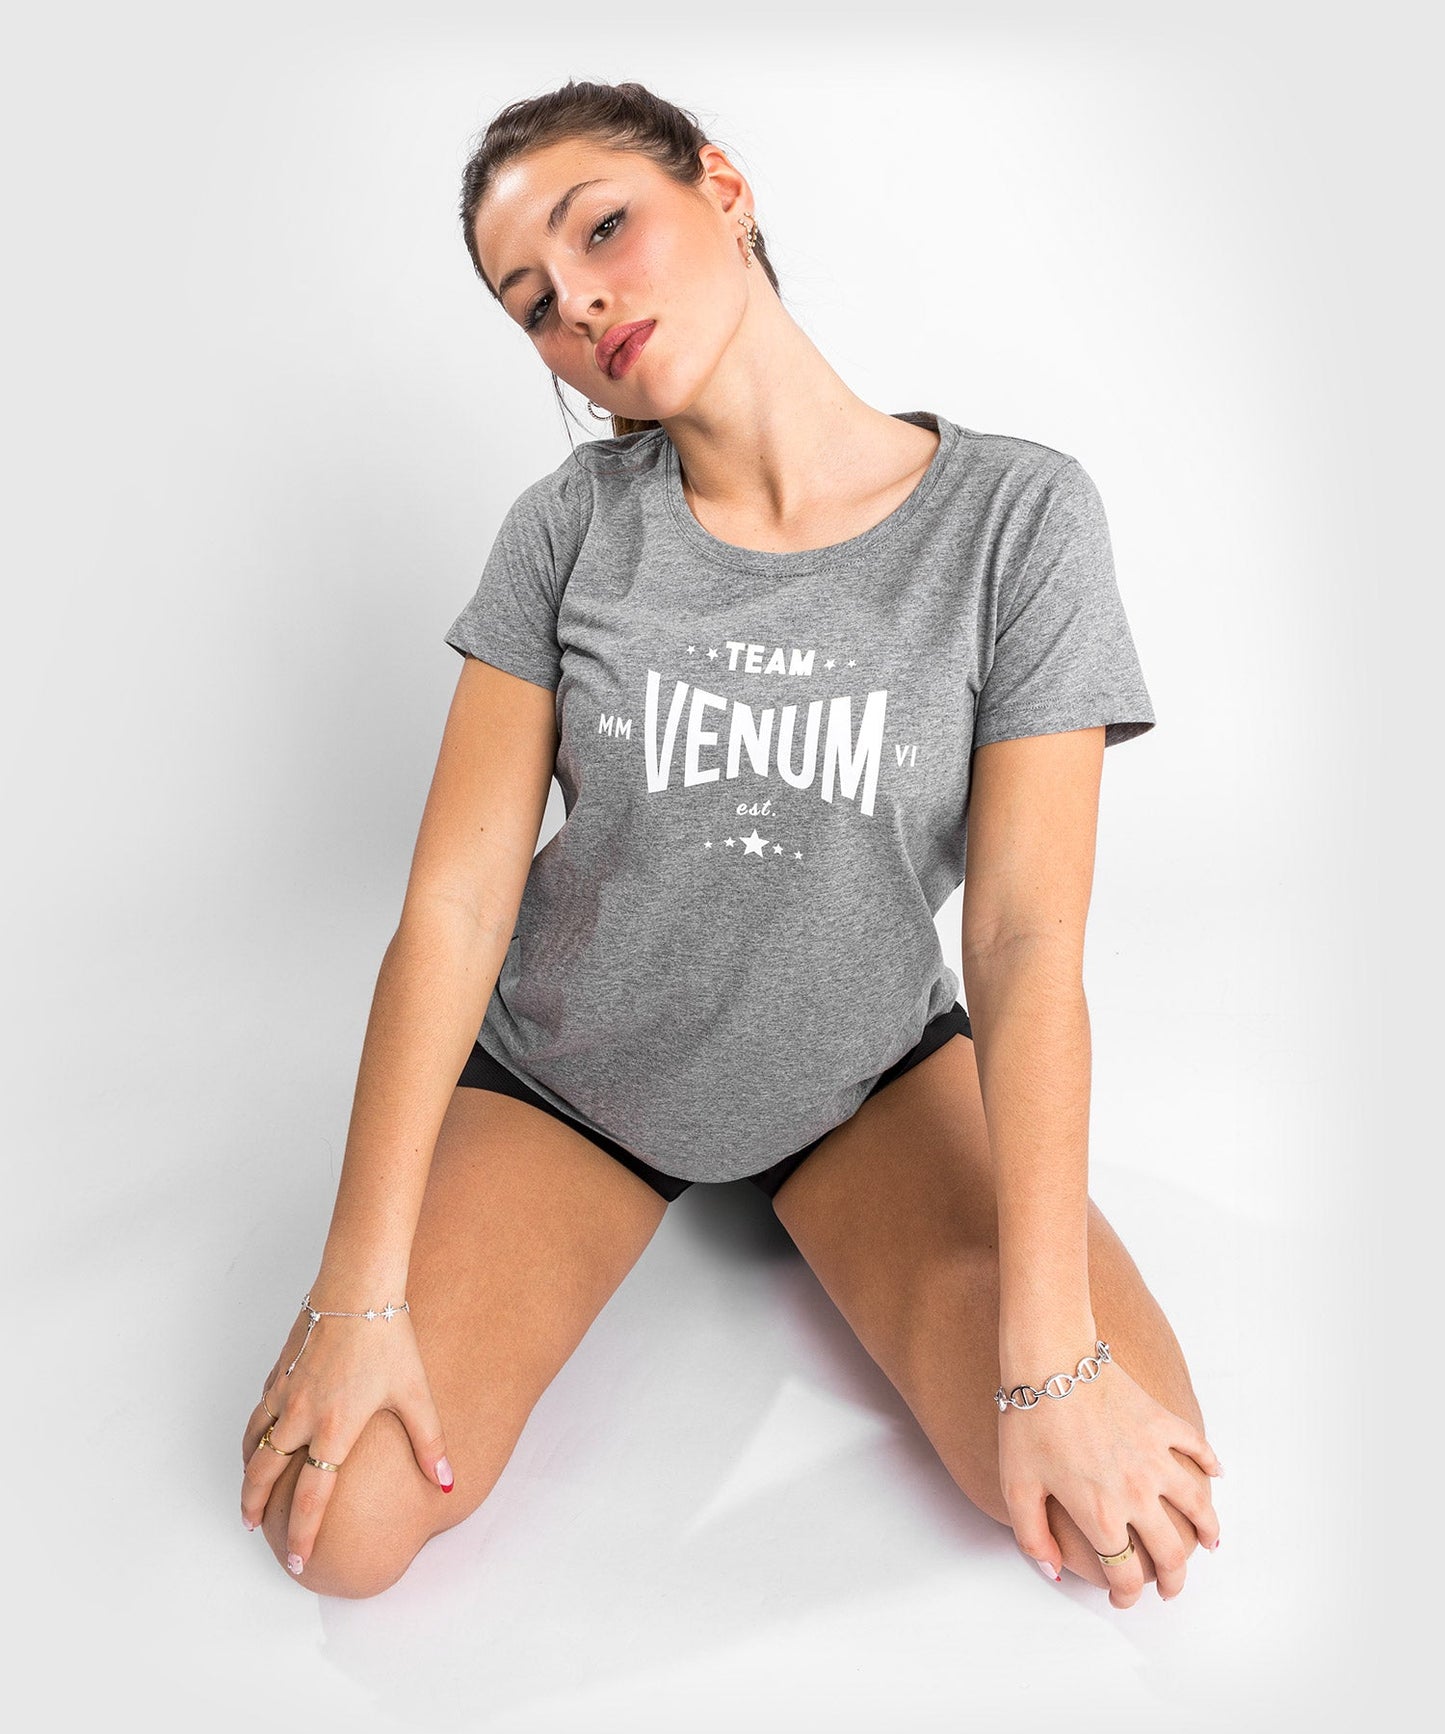 Venum Team 2.0 T-Shirt - For Women - Light Heather Grey